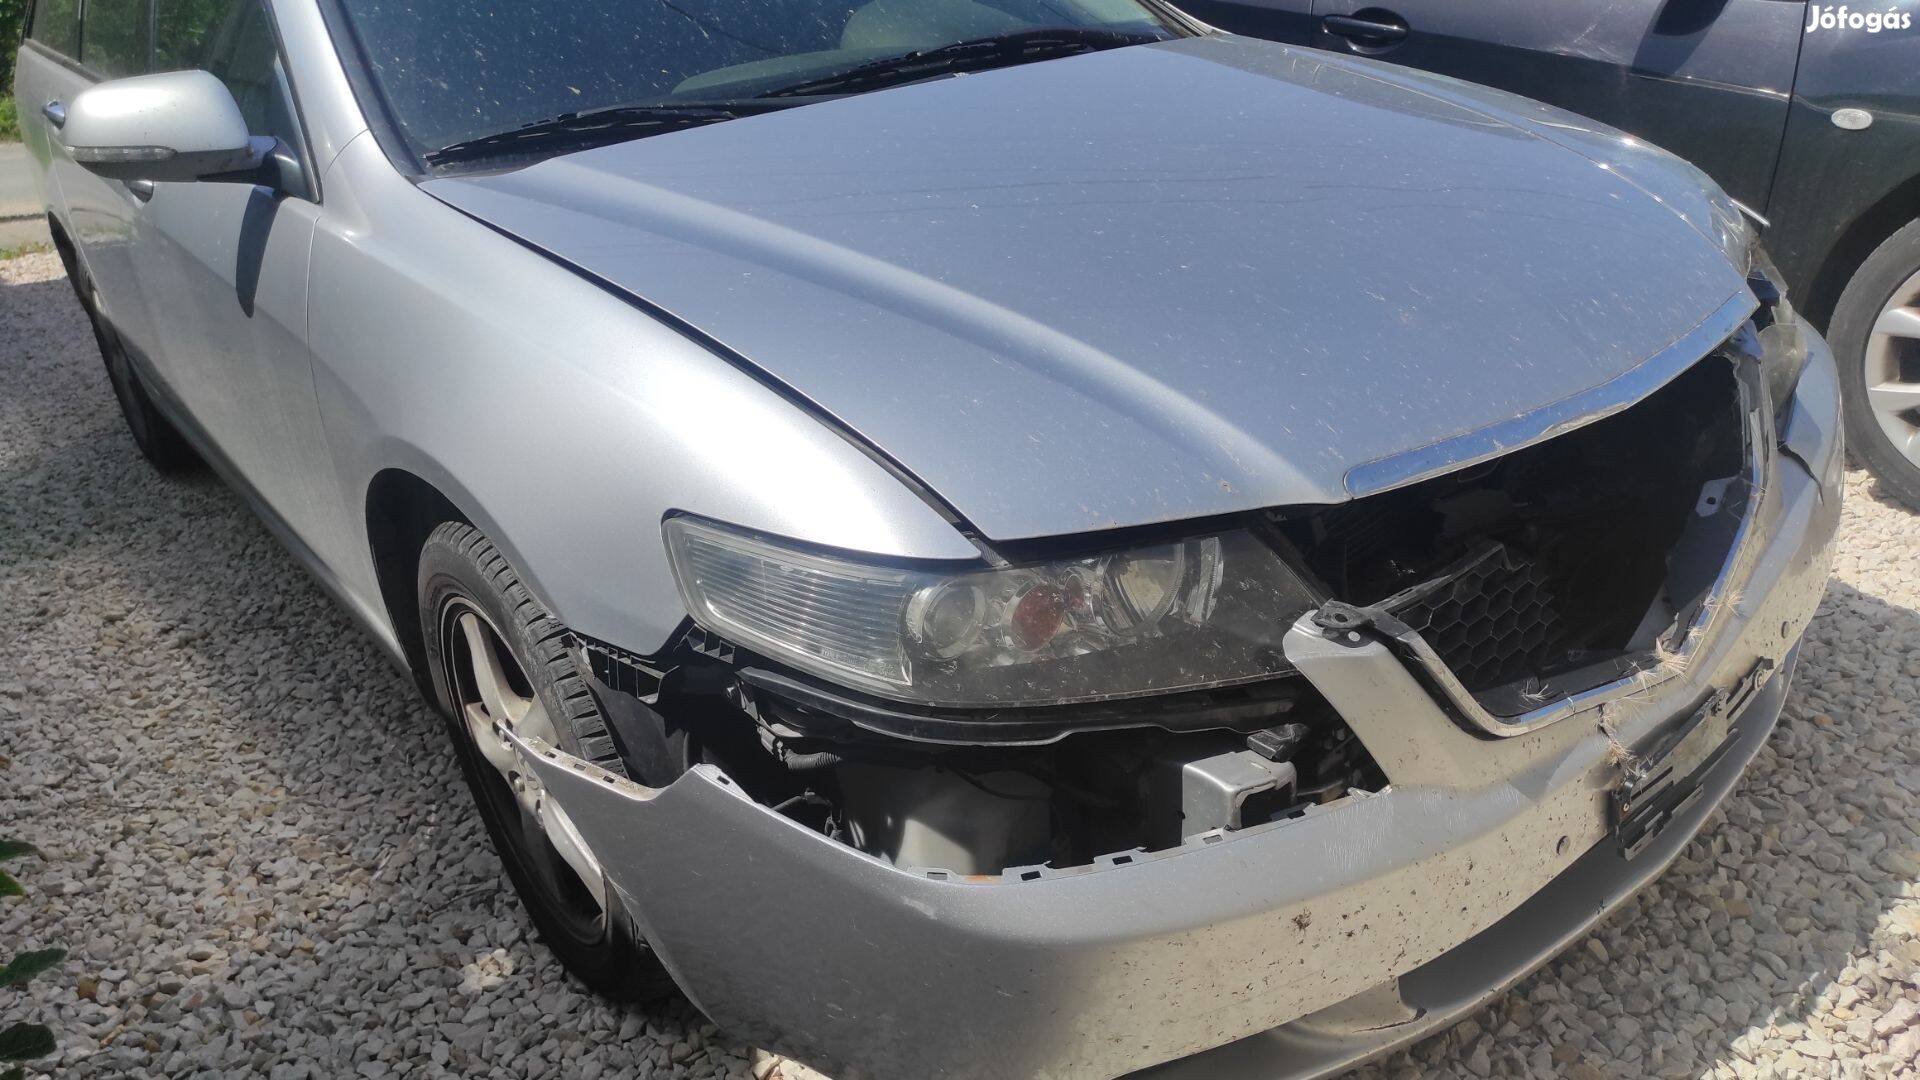 Honda használt autó sérült